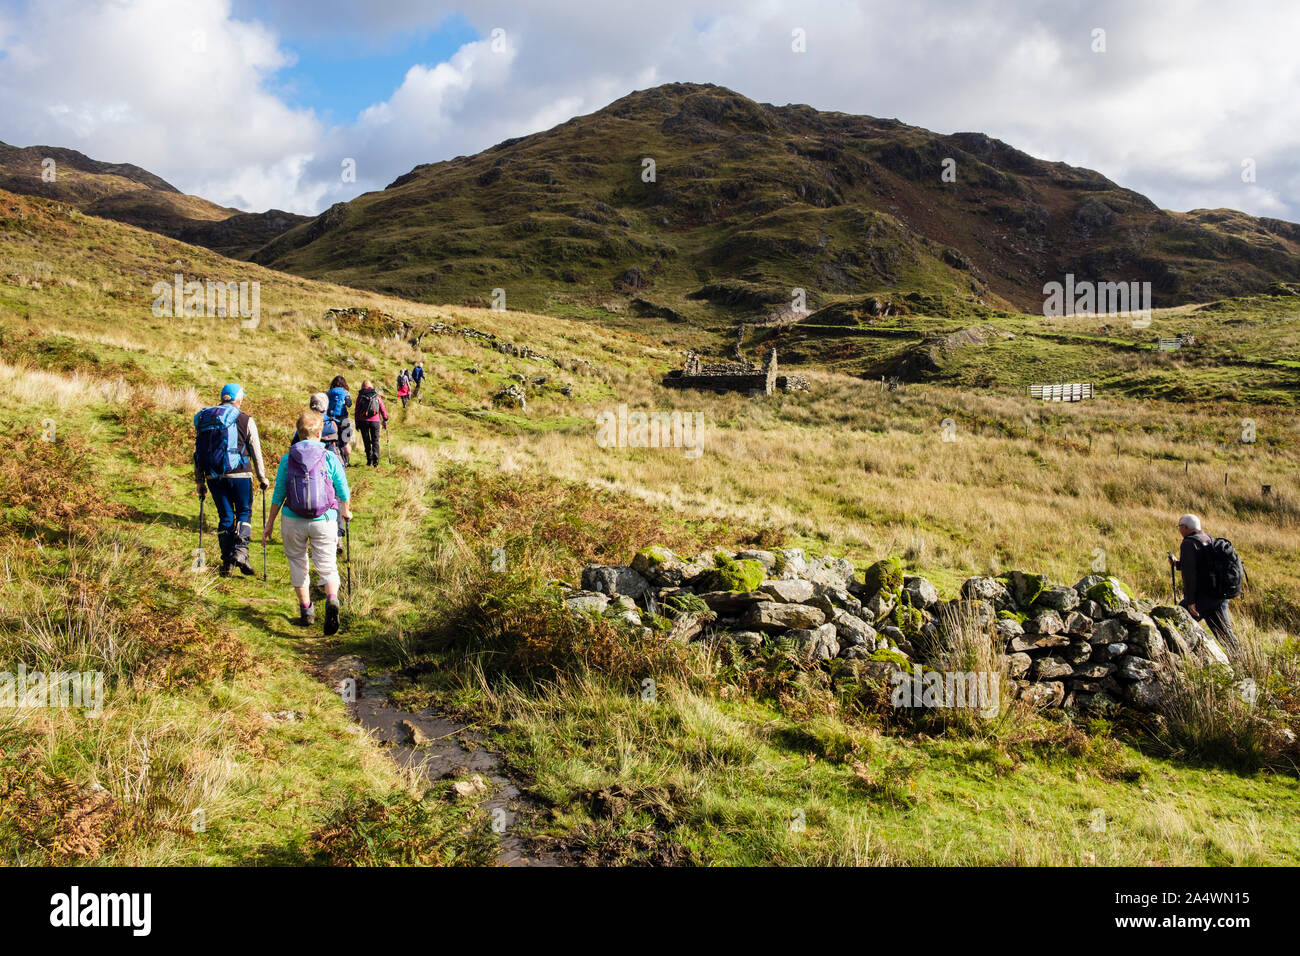 Les randonneurs randonnée sur un chemin de pays au-dessus de Nant Gwynant dans collines du Parc National de Snowdonia. , Beddgelert Gwynedd, au nord du Pays de Galles, Royaume-Uni, Angleterre Banque D'Images